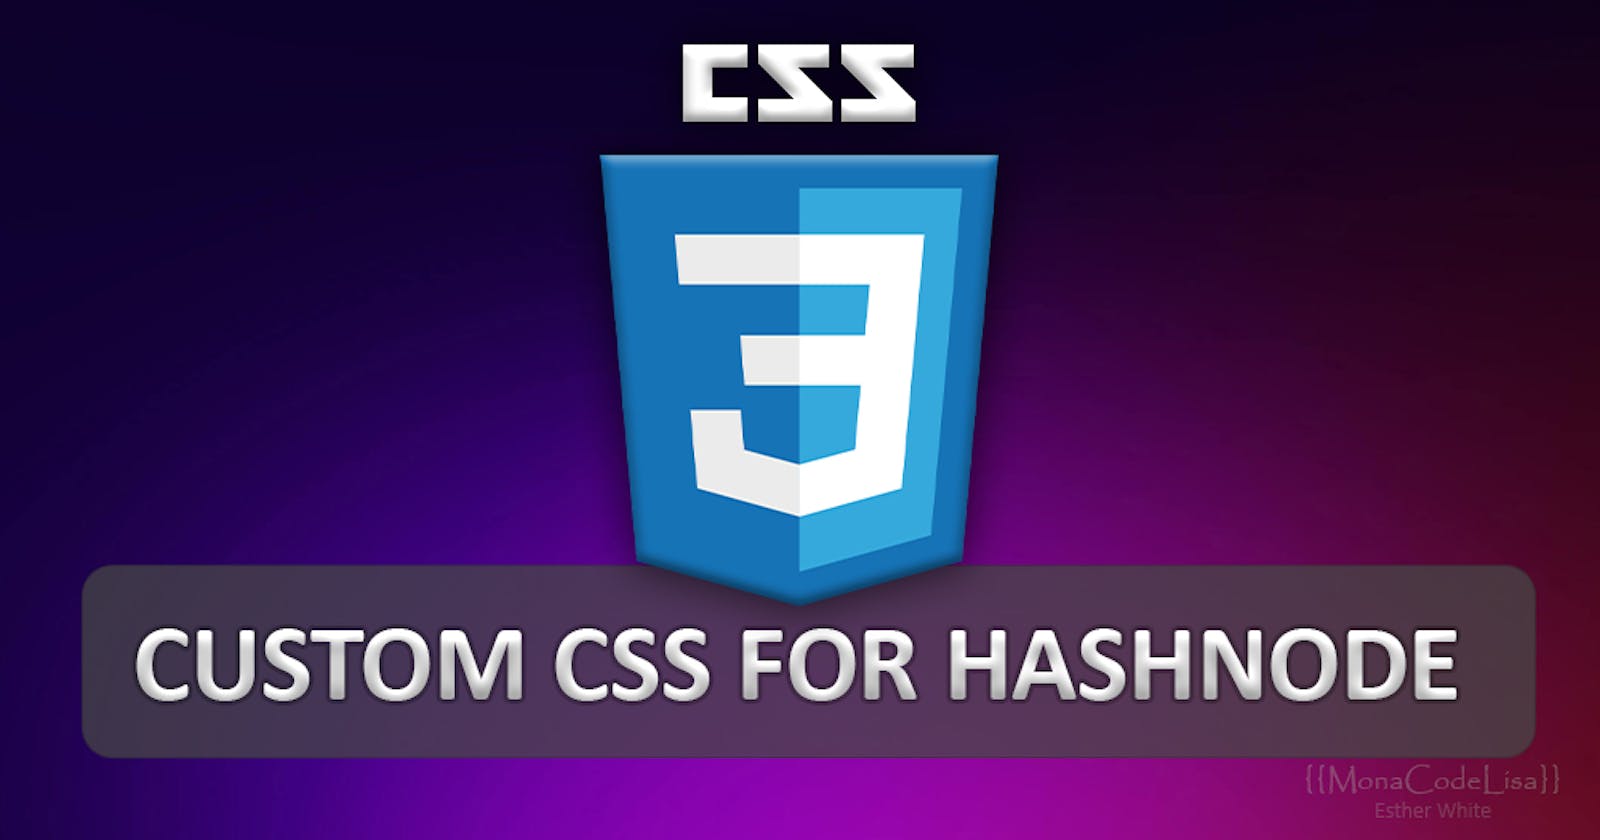 My Custom CSS for Hashnode